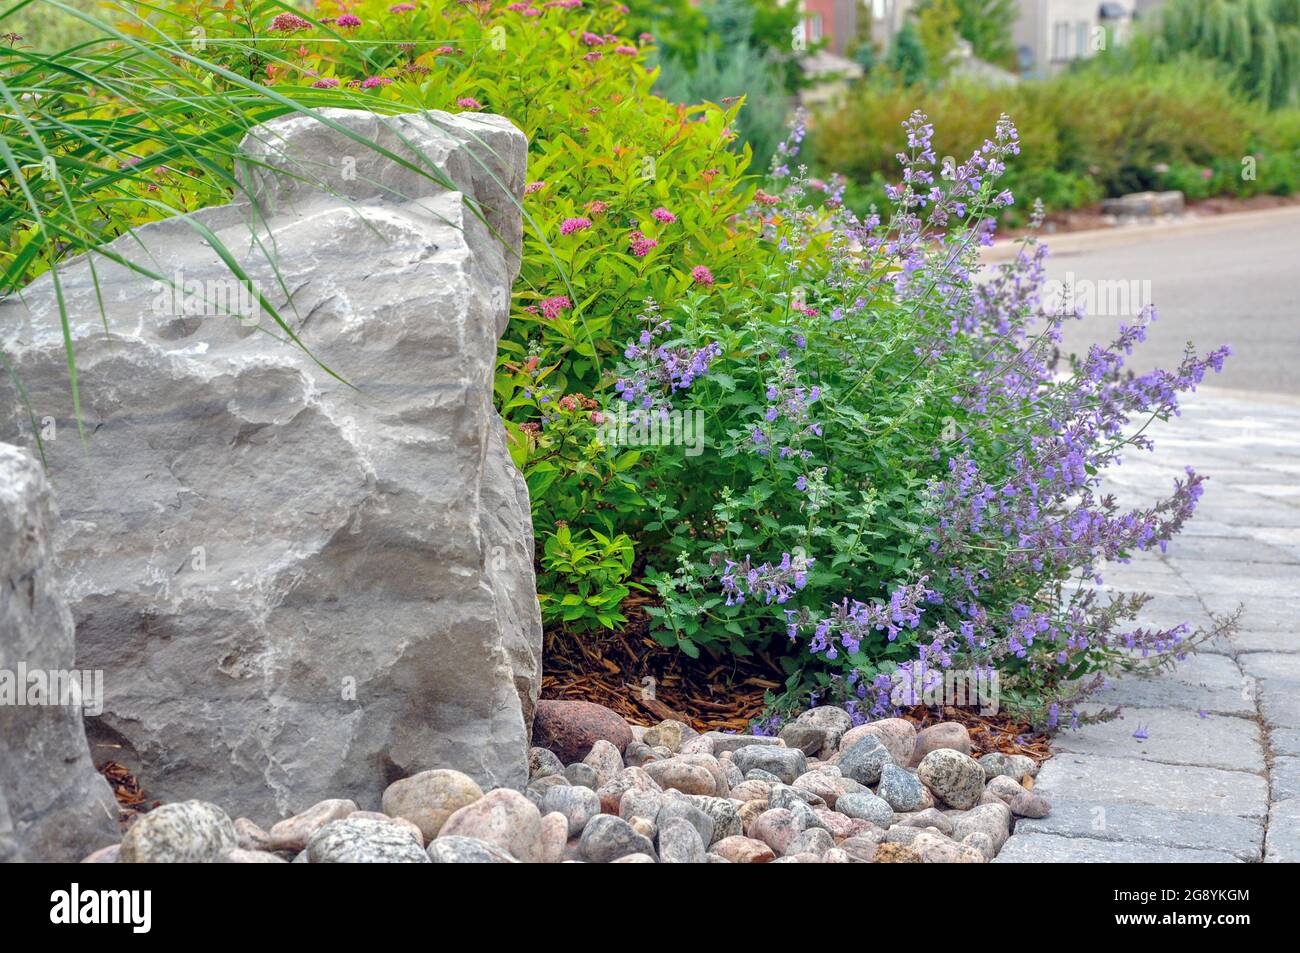 Schöner Gartenhintergrund zeigt einen großen Felsen mit kleinerem Flussgestein, lila blühender nepeta oder Minze und grauen Pflastersteinen. Stockfoto